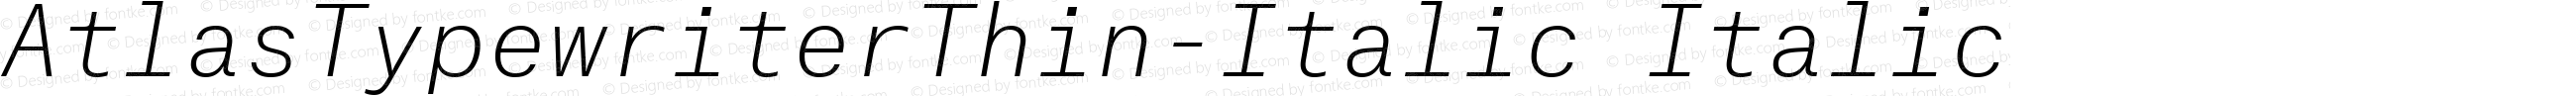 AtlasTypewriterThin-Italic